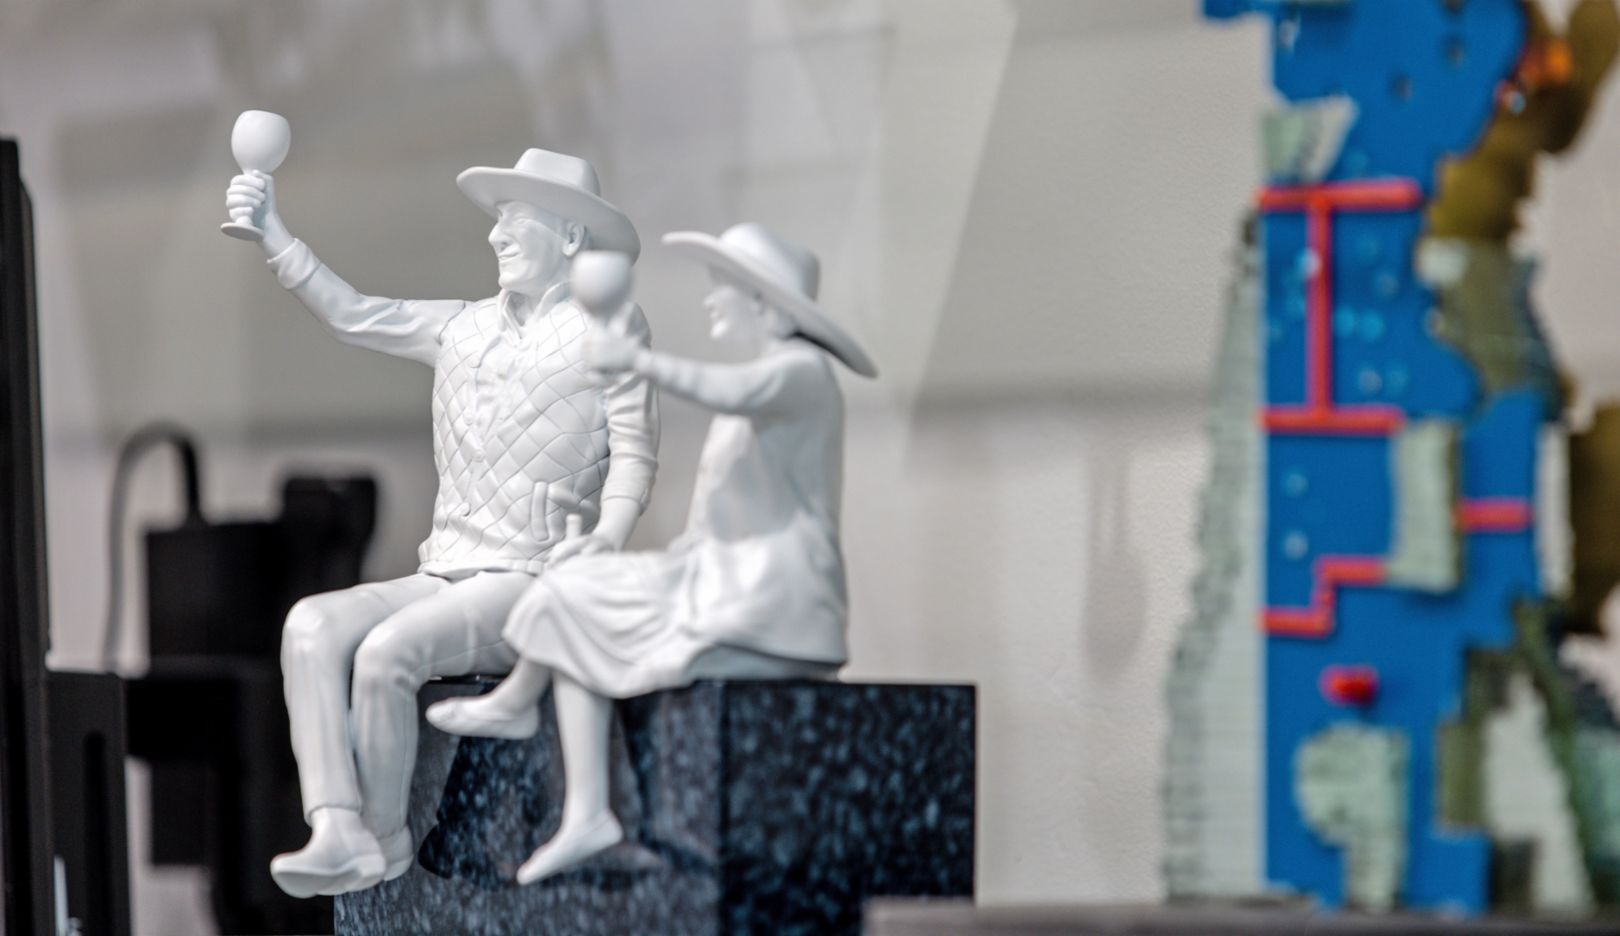 Culinaire pioniers van de Napa Valley: Deze sculptuur eert Robert Mondavi en Margrit Biever Mondavi. Op de afbeelding een miniatuur. In het echt zit het paar als sculptuur op het dak van het Culinary Institute of America.